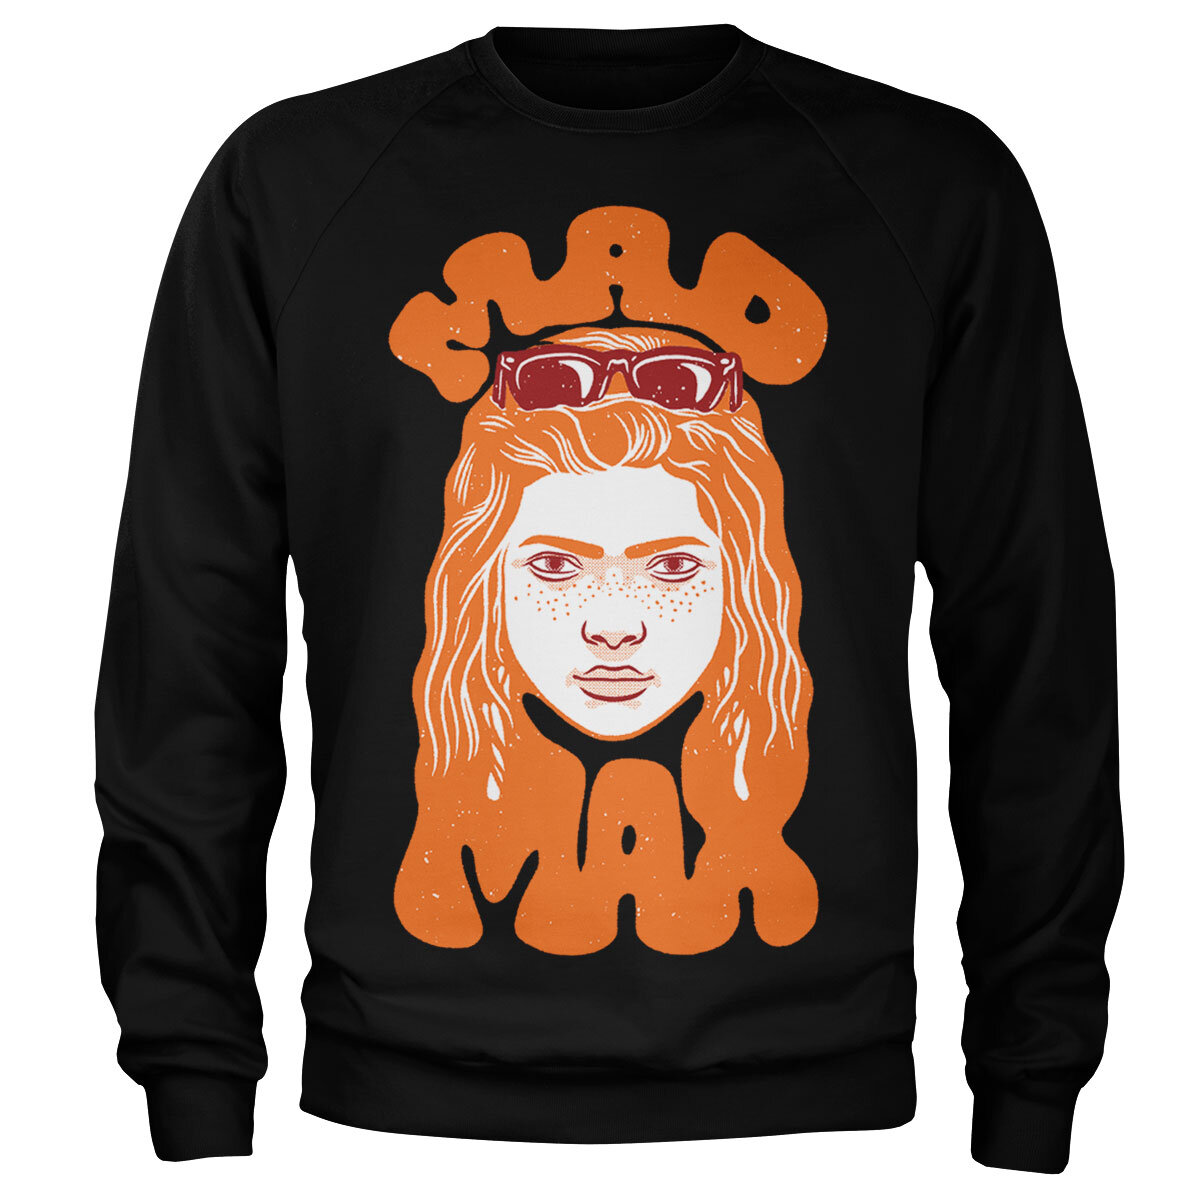 Stranger Things - Mad Max Sweatshirt